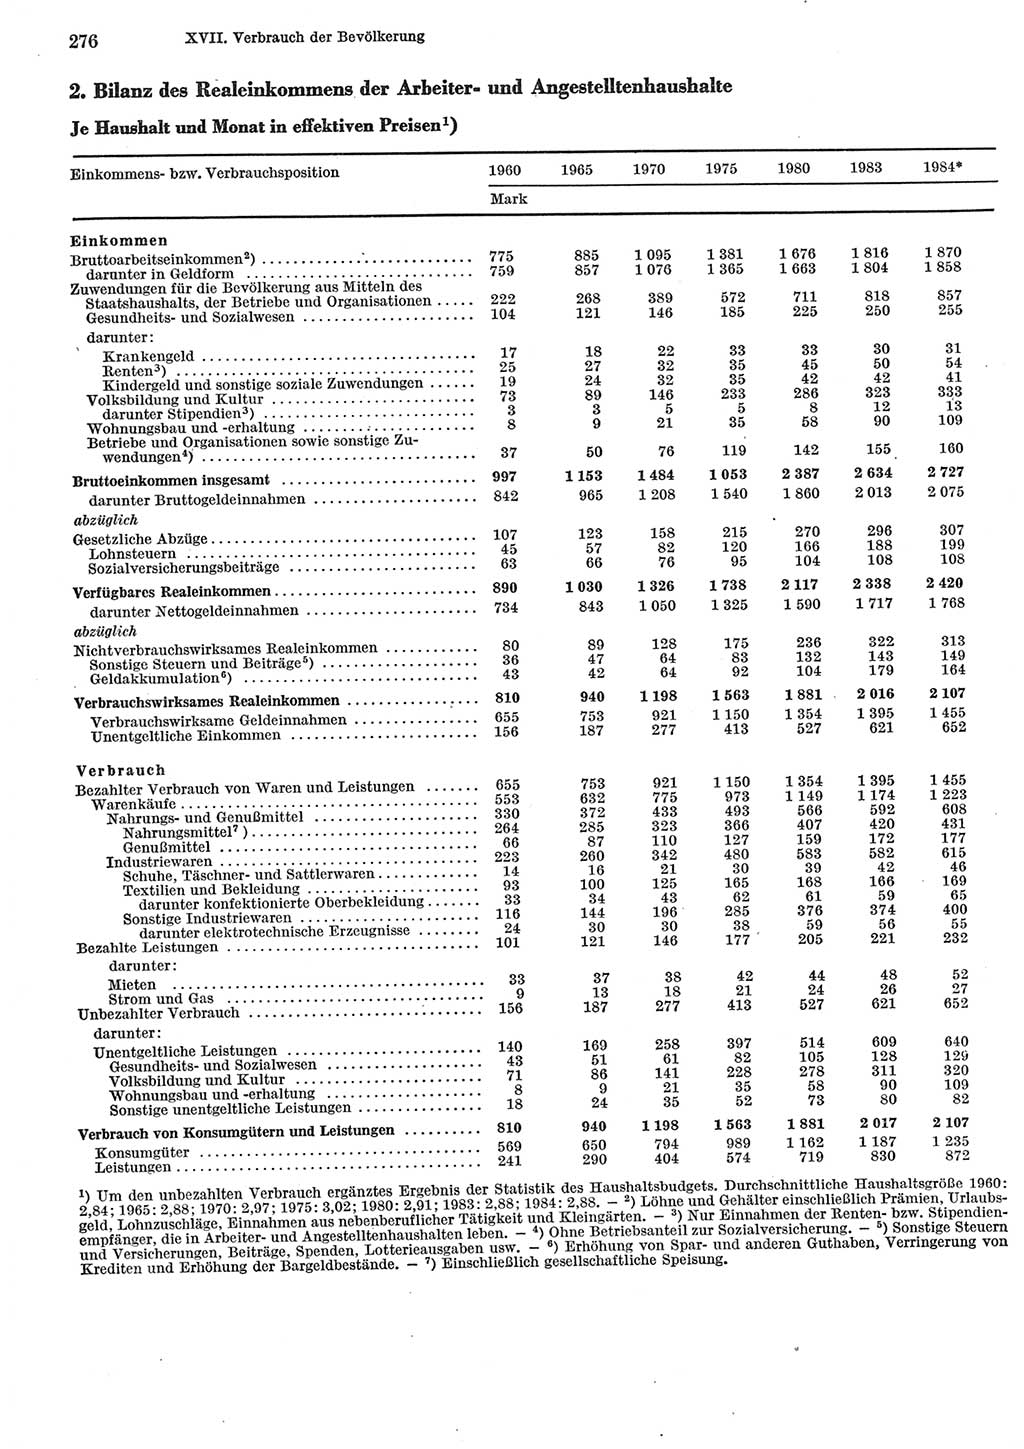 Statistisches Jahrbuch der Deutschen Demokratischen Republik (DDR) 1985, Seite 276 (Stat. Jb. DDR 1985, S. 276)